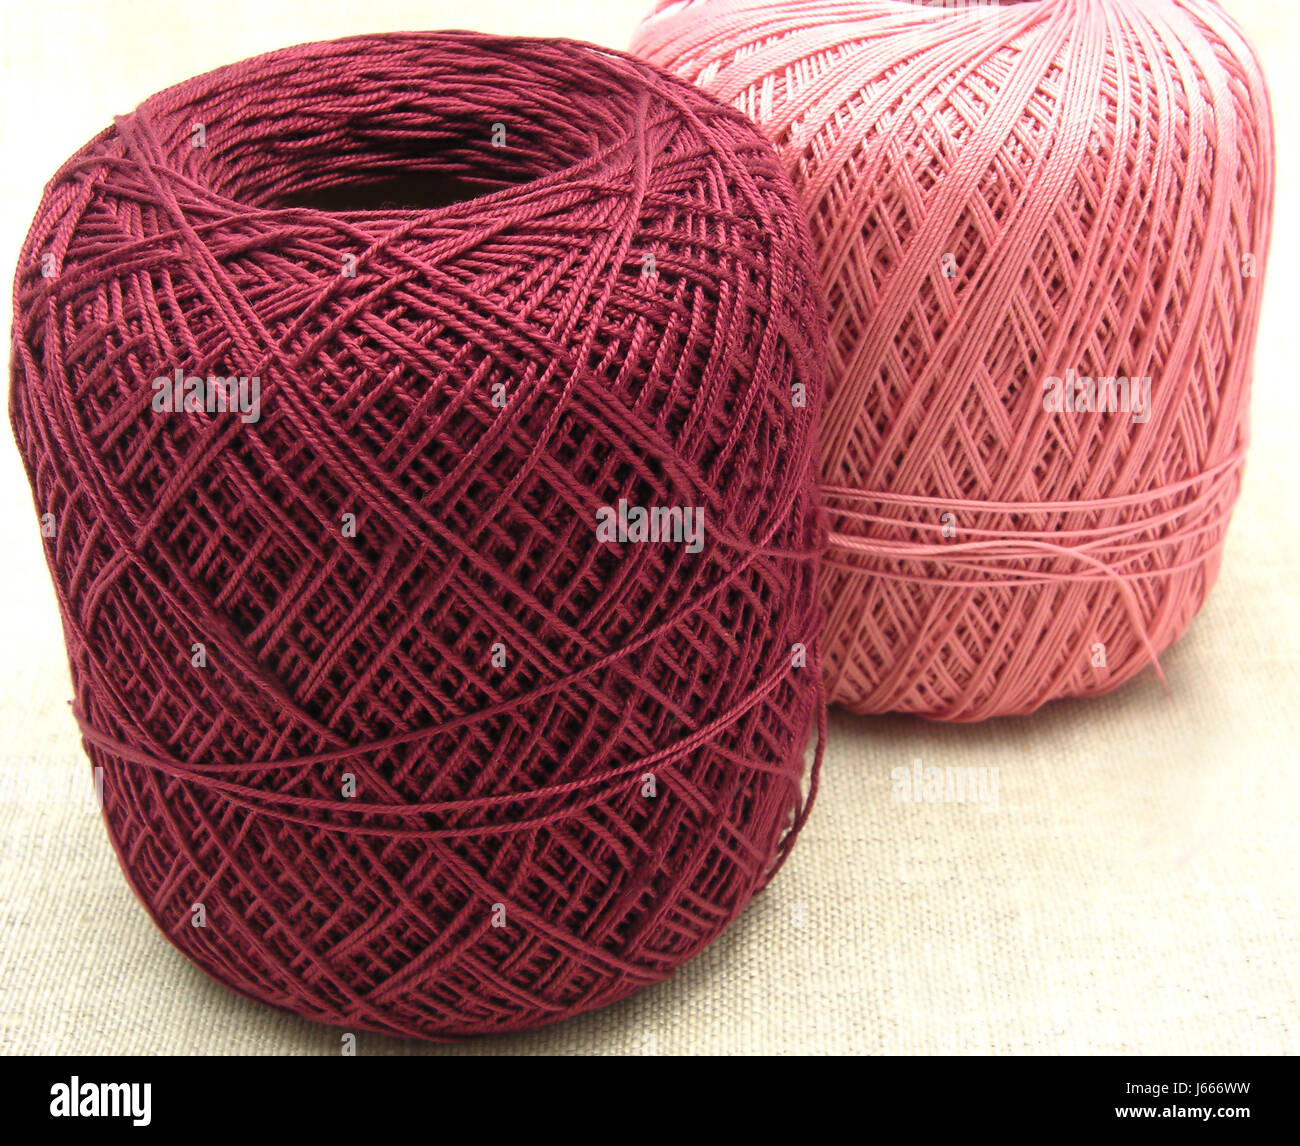 Artesanías tejido de lana hilados de lana bolas crochet macro macro cierre admisión Foto de stock